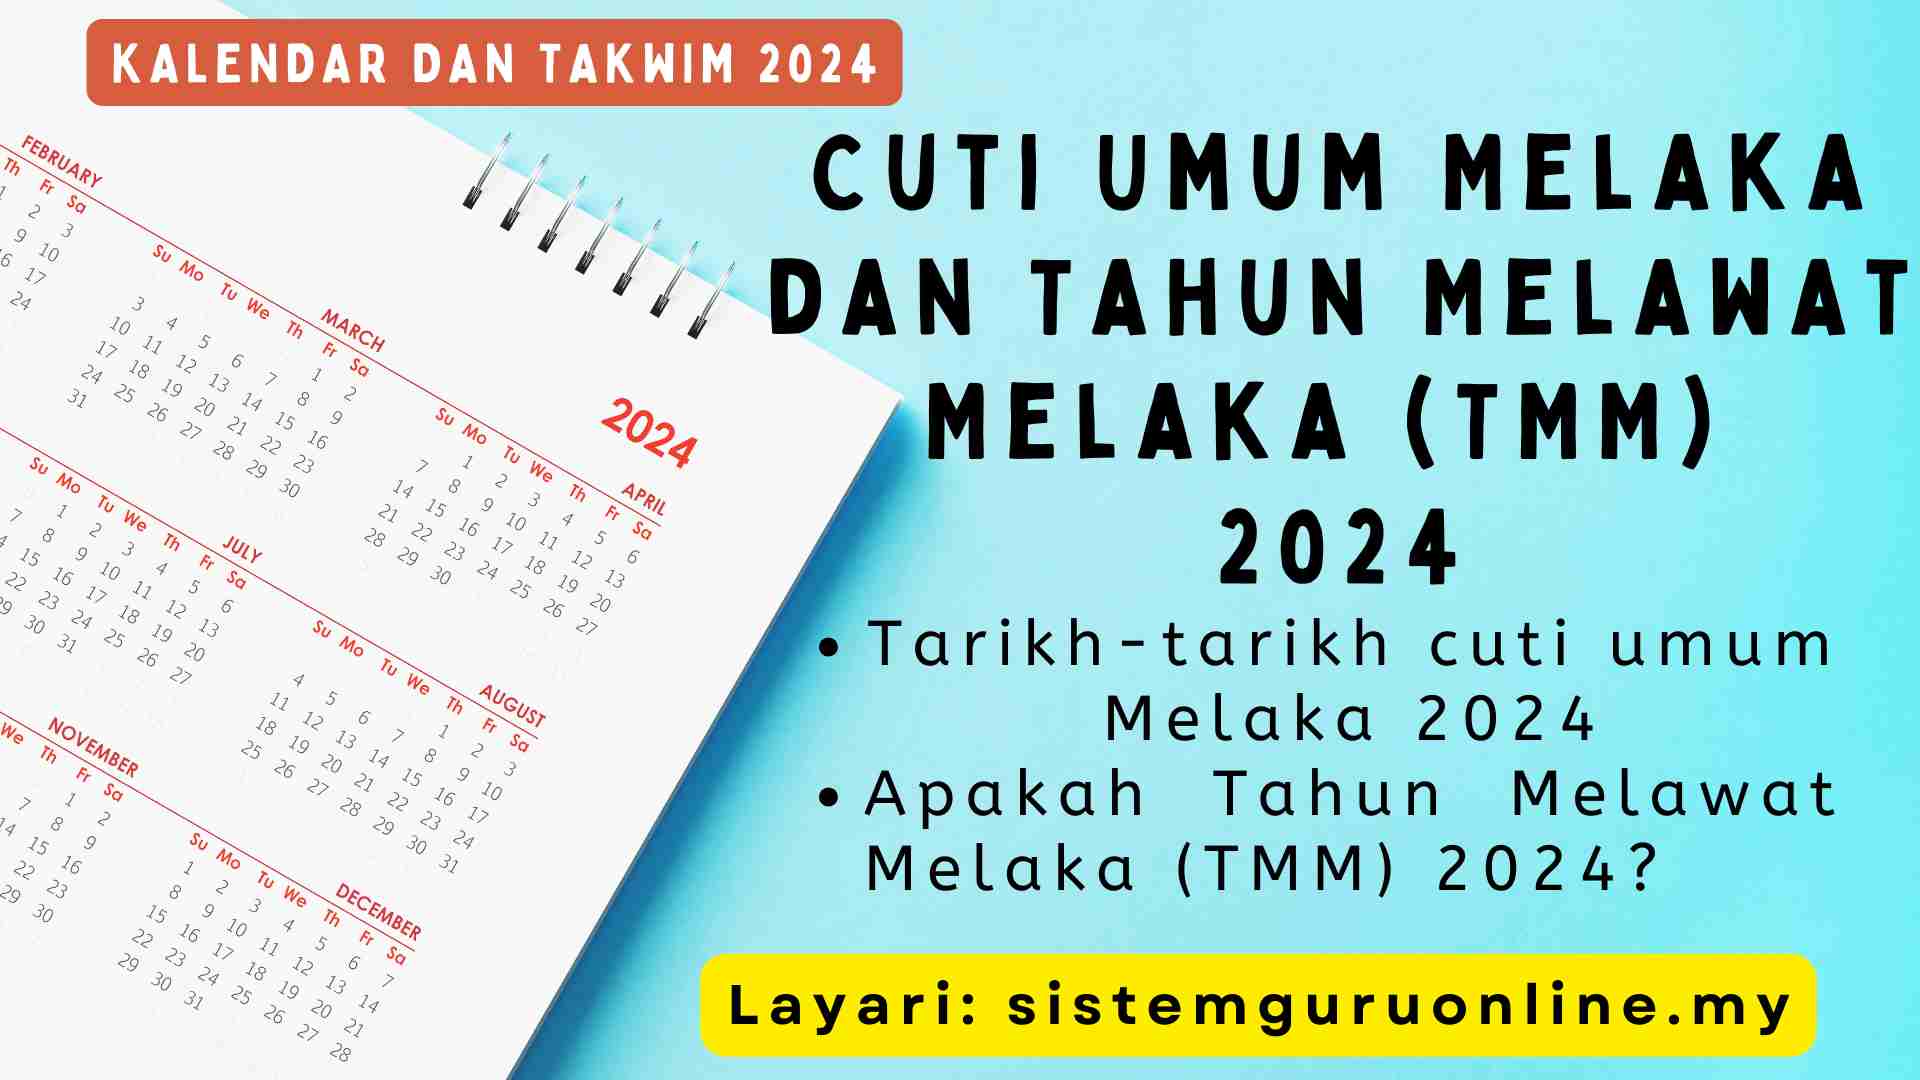 Cuti Umum Melaka 2024 Dan Tahun Melawat Melaka (TMM) 2024